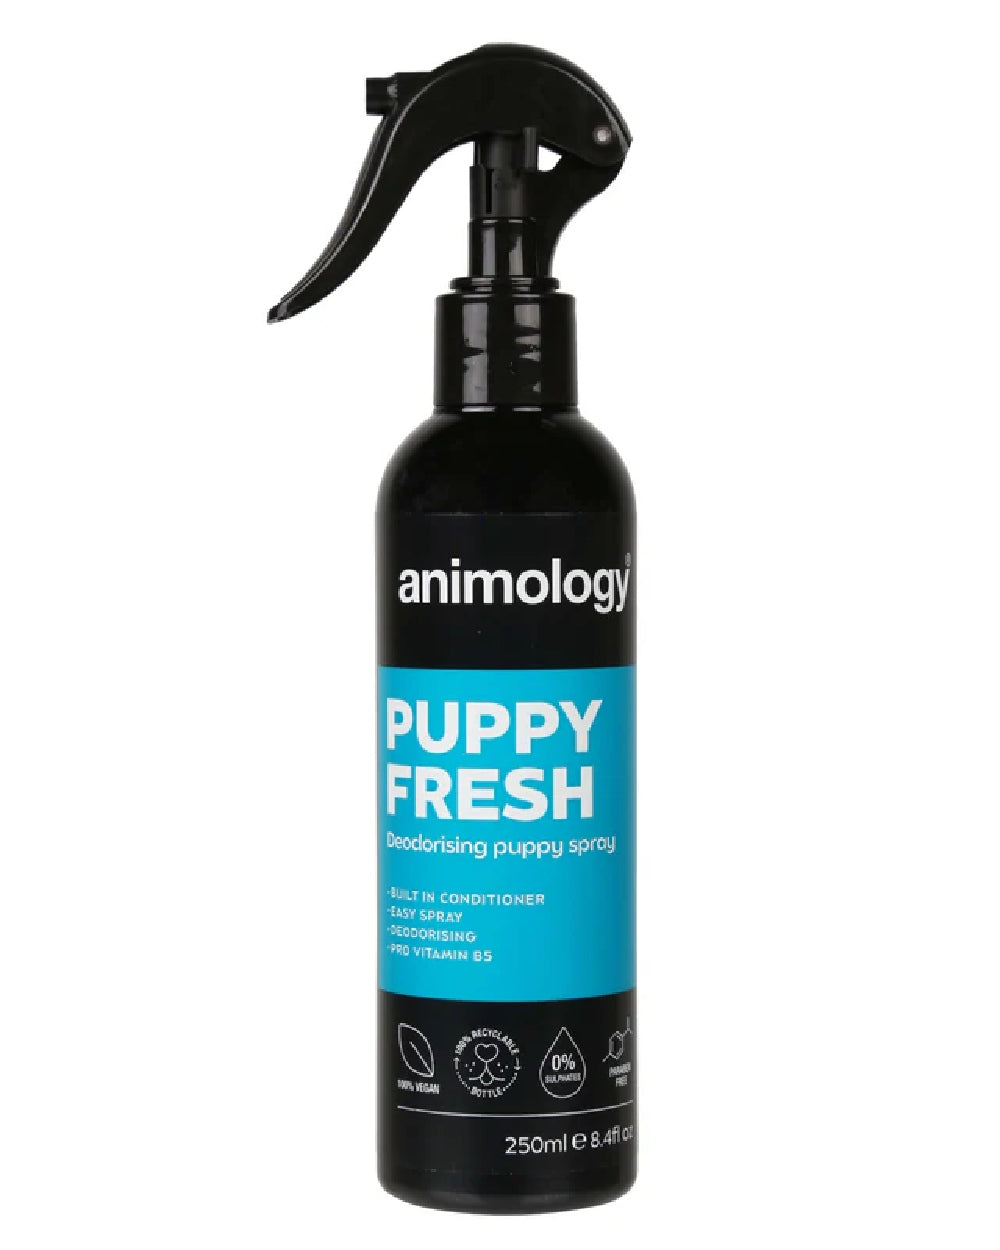 Animology Puppy Fresh Deodorising Spray 250ml on white background